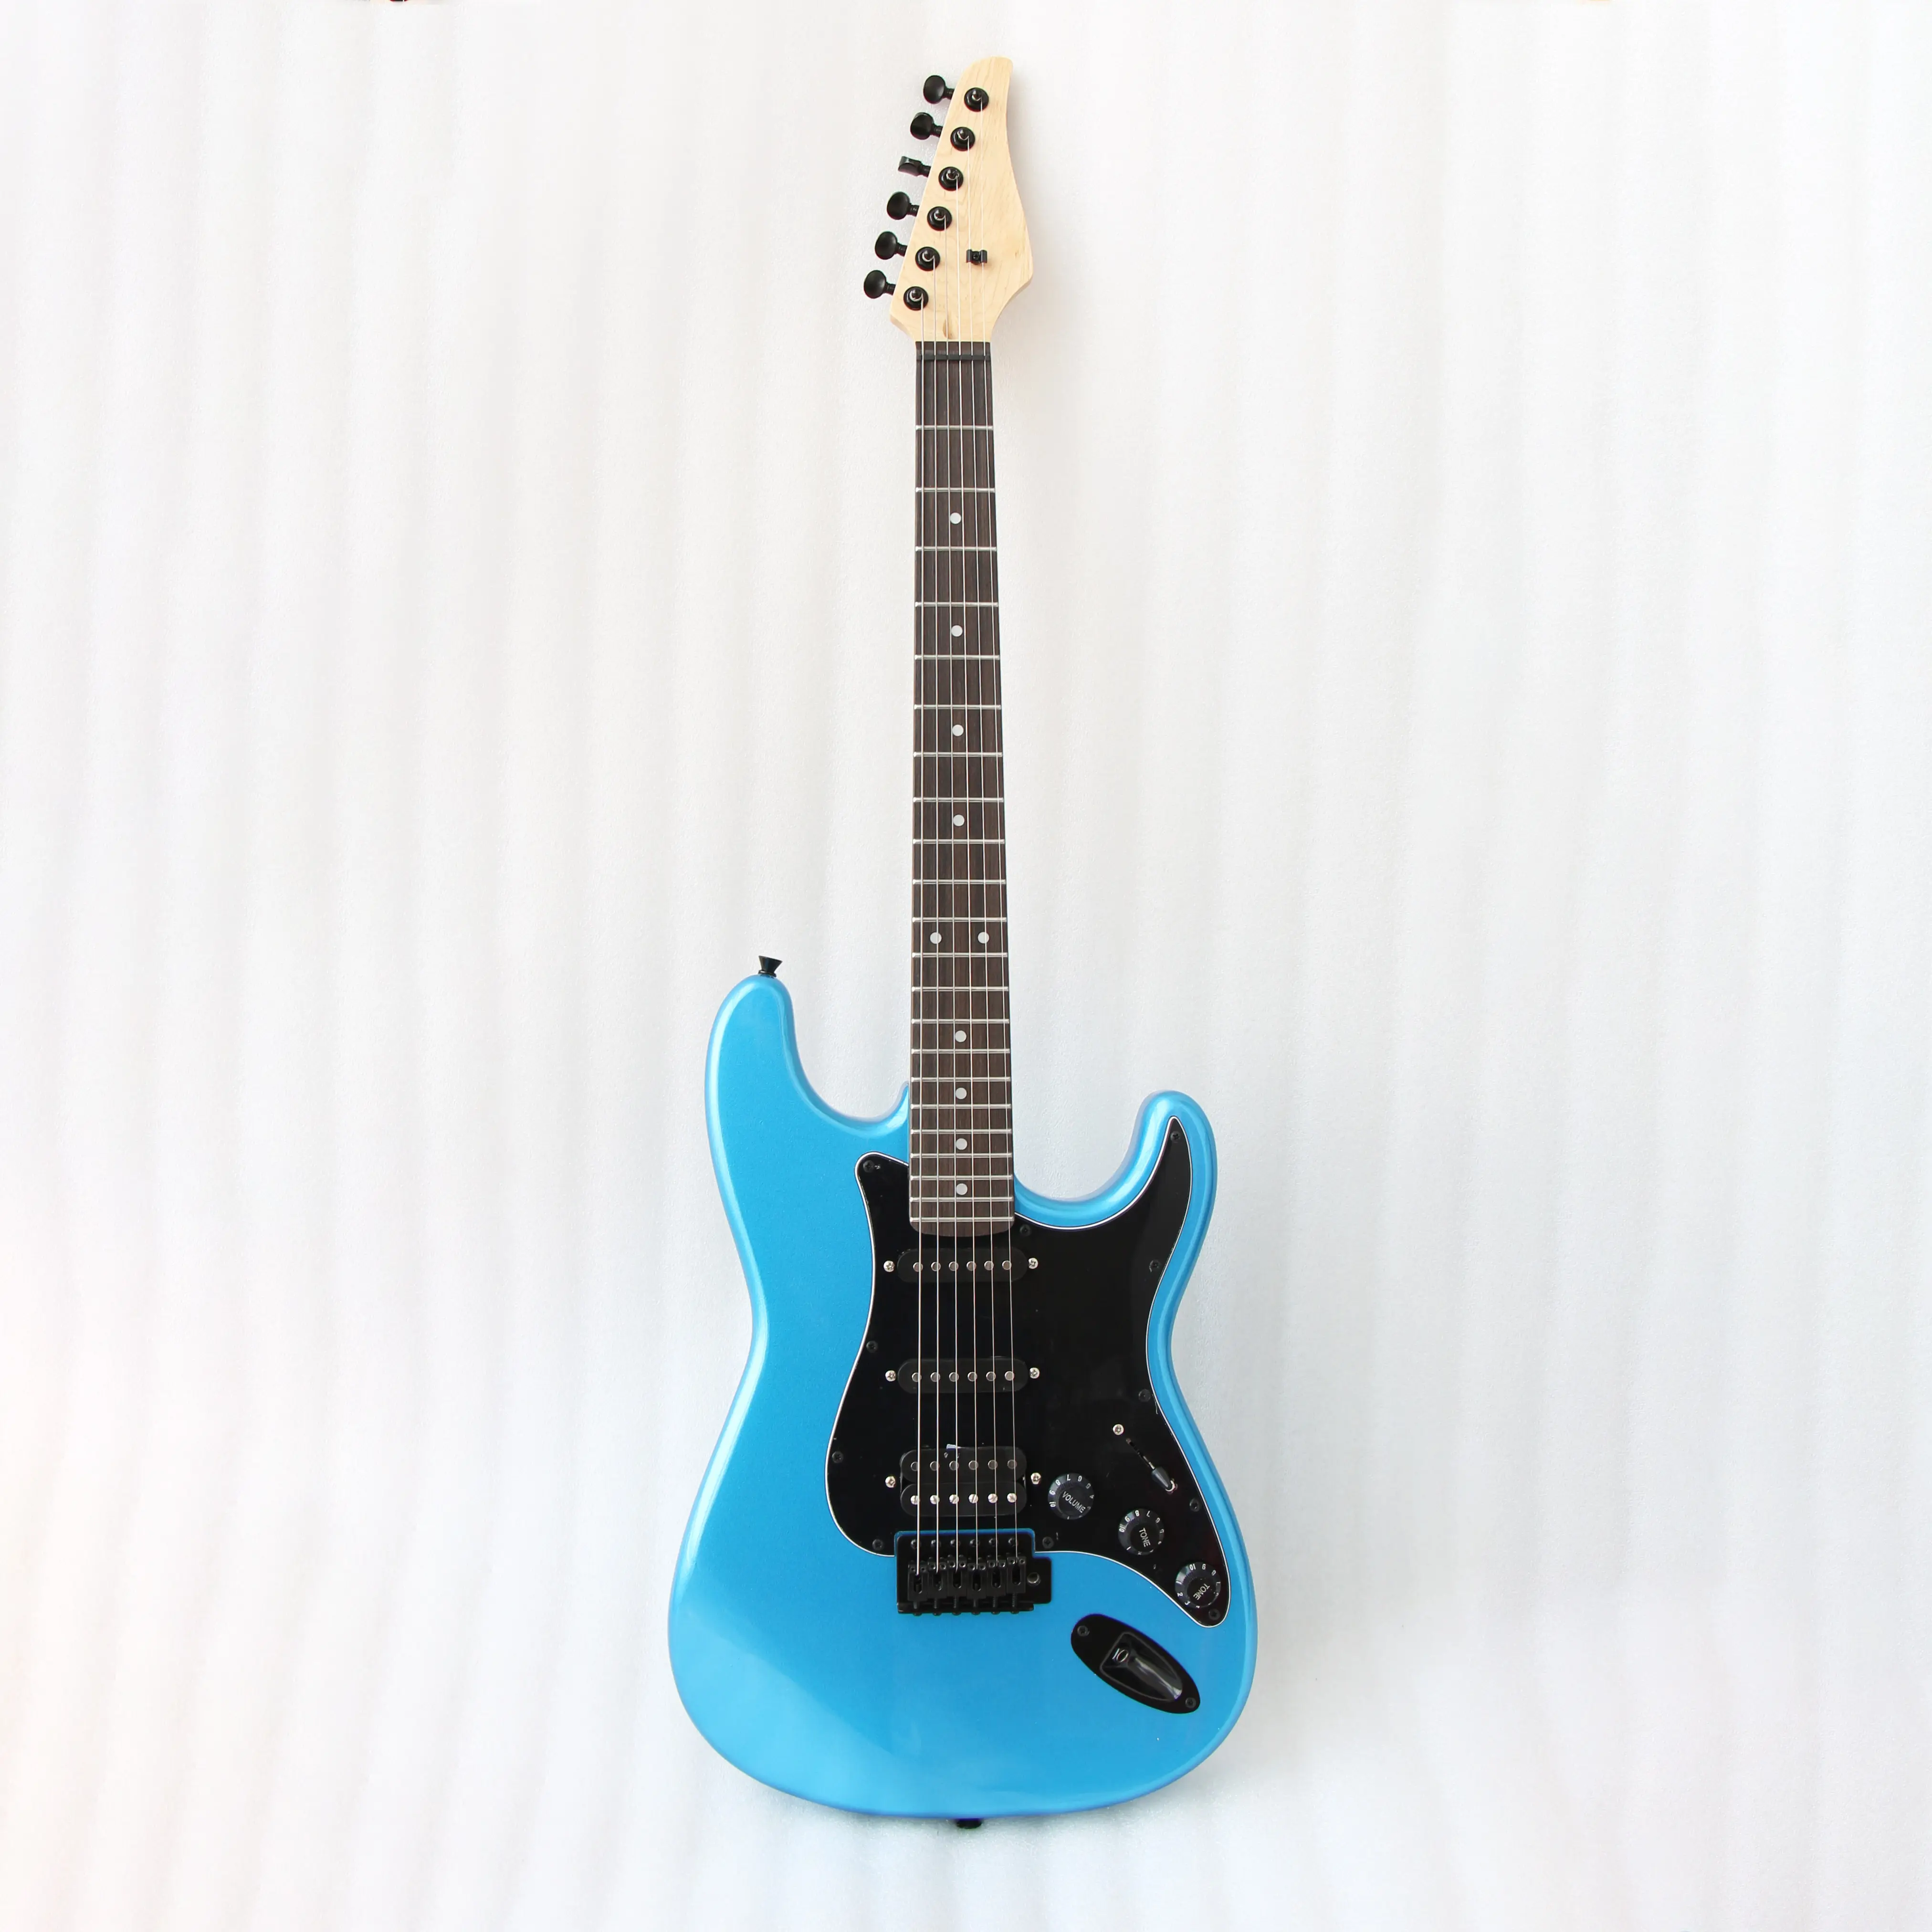 अच्छी लागत प्रदर्शन इलेक्ट्रिक गिटार सस्ते संगीत वाद्ययंत्र इलेक्ट्रिक गिटार स्वीकार करते हैं